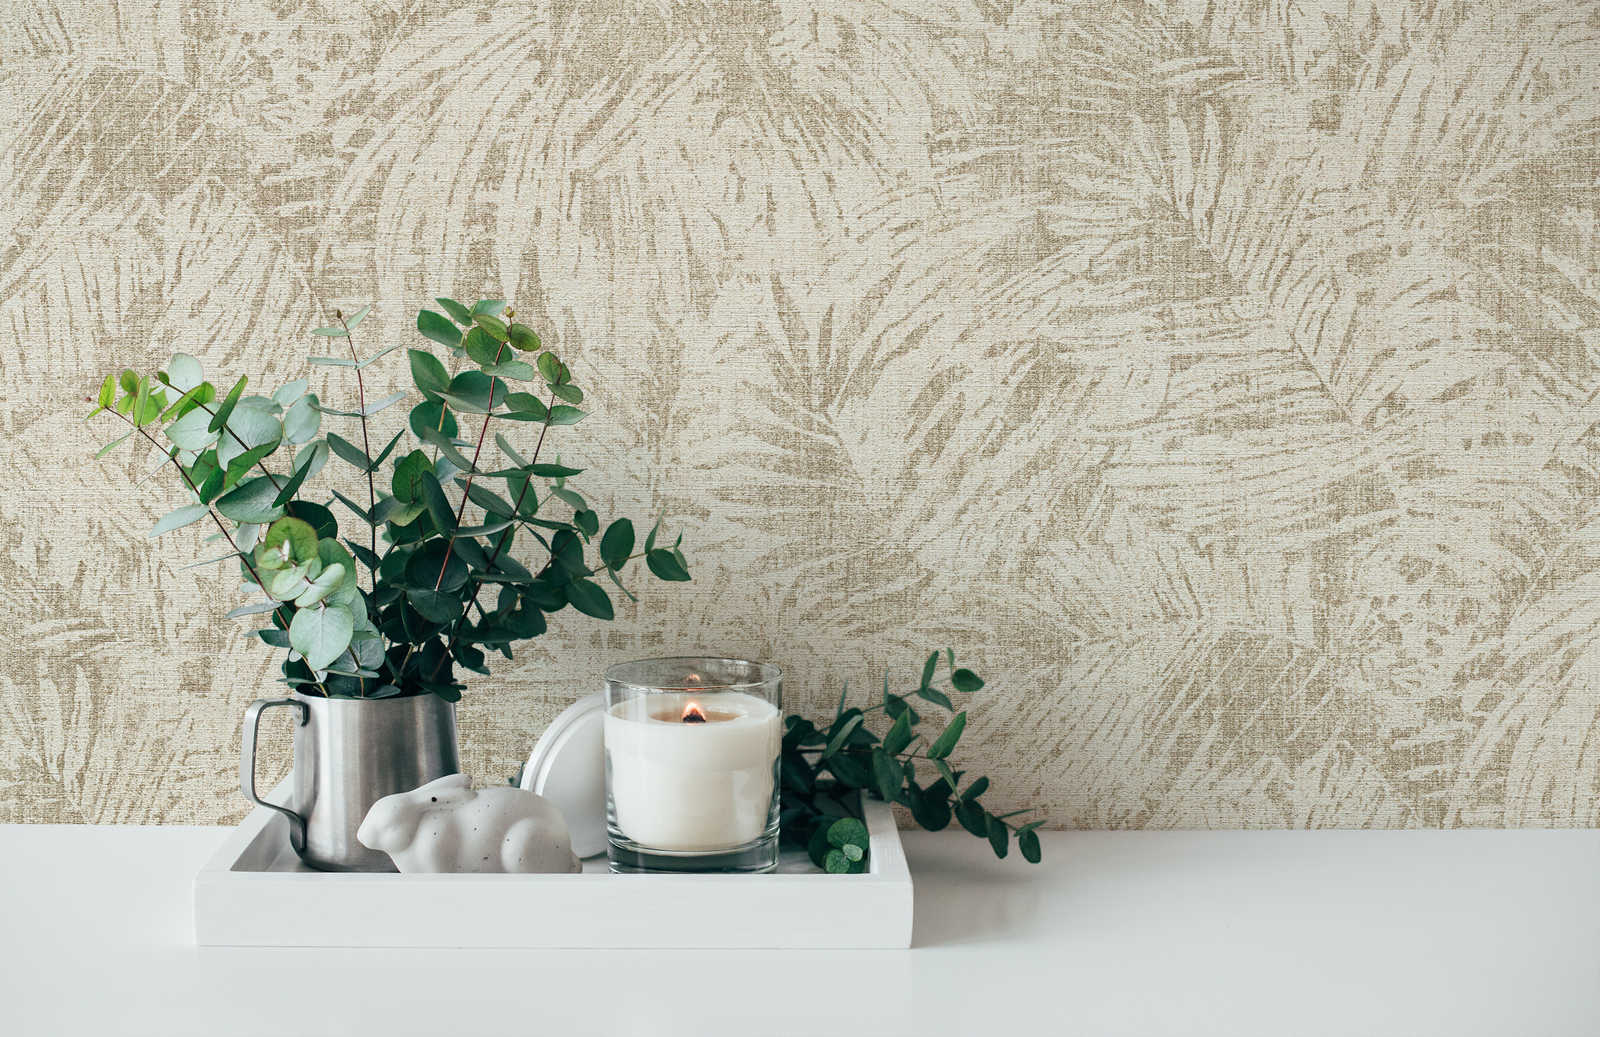             Wallpaper leaves pattern & linen effect in colonial style - Brown, Beige
        